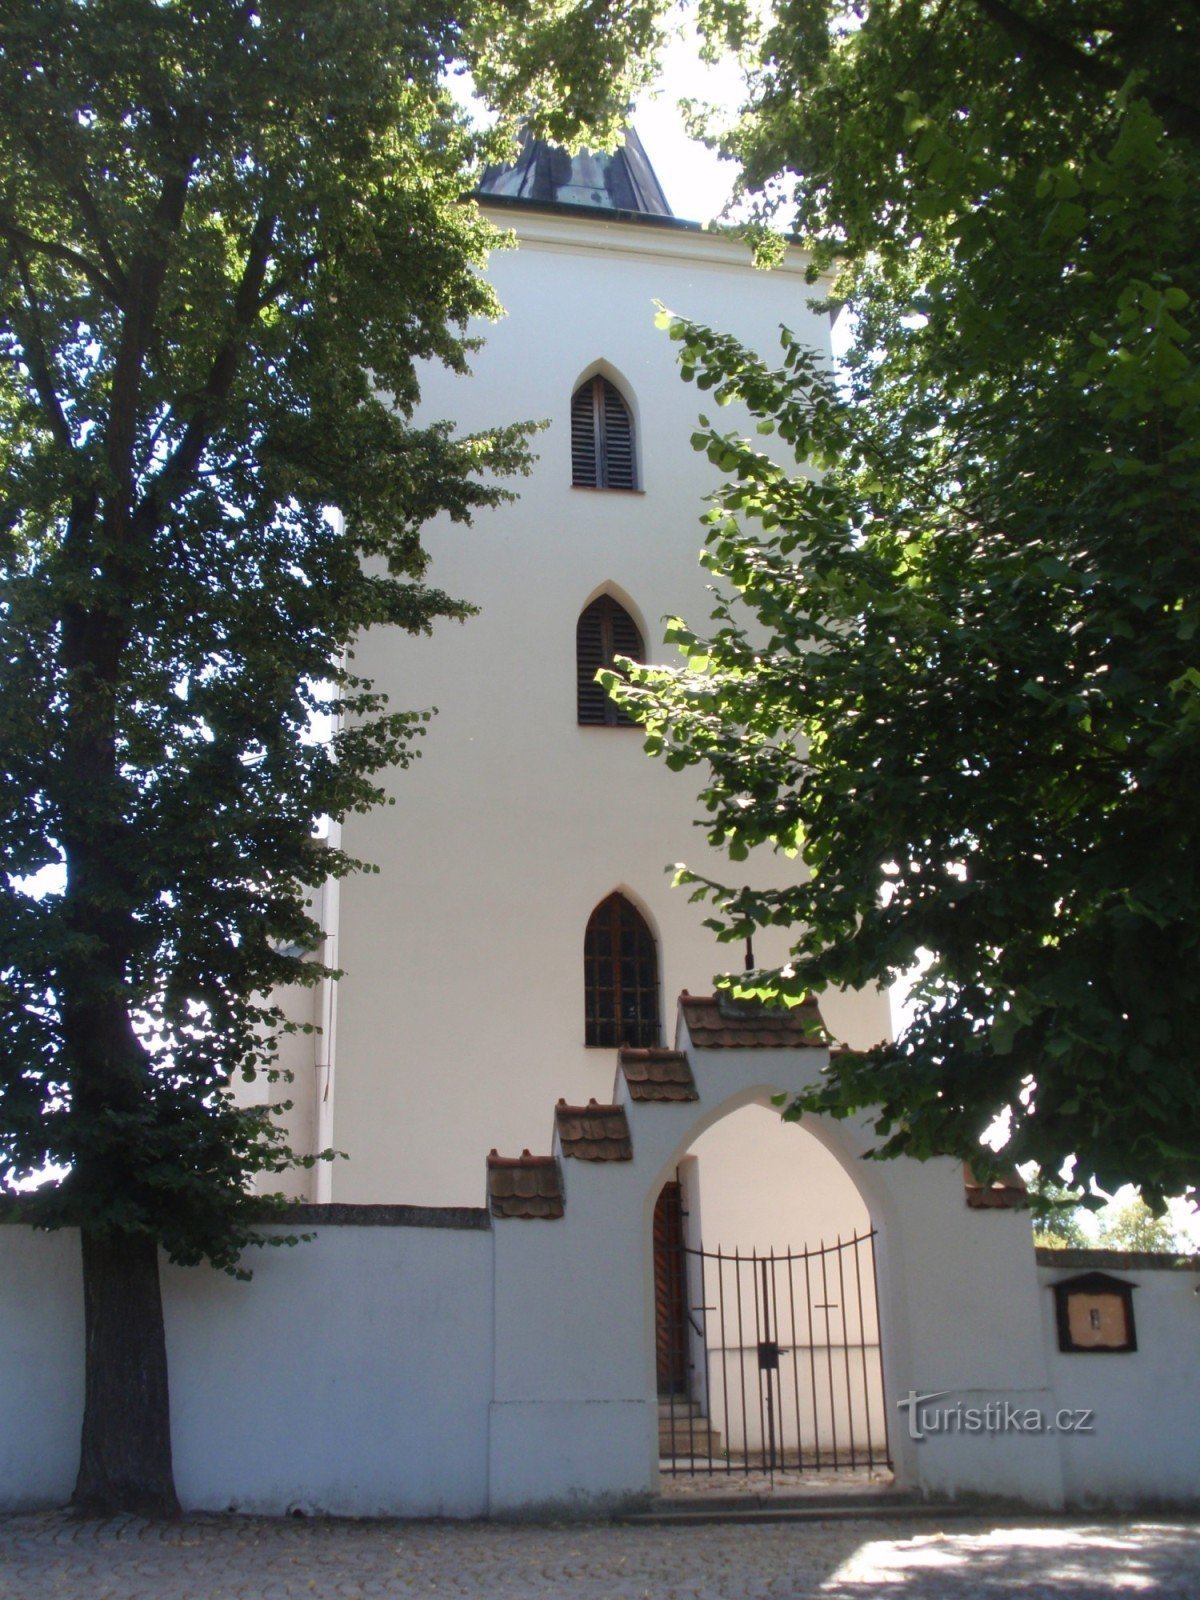 Церква св. Філіп і Якуб в Лелековіце